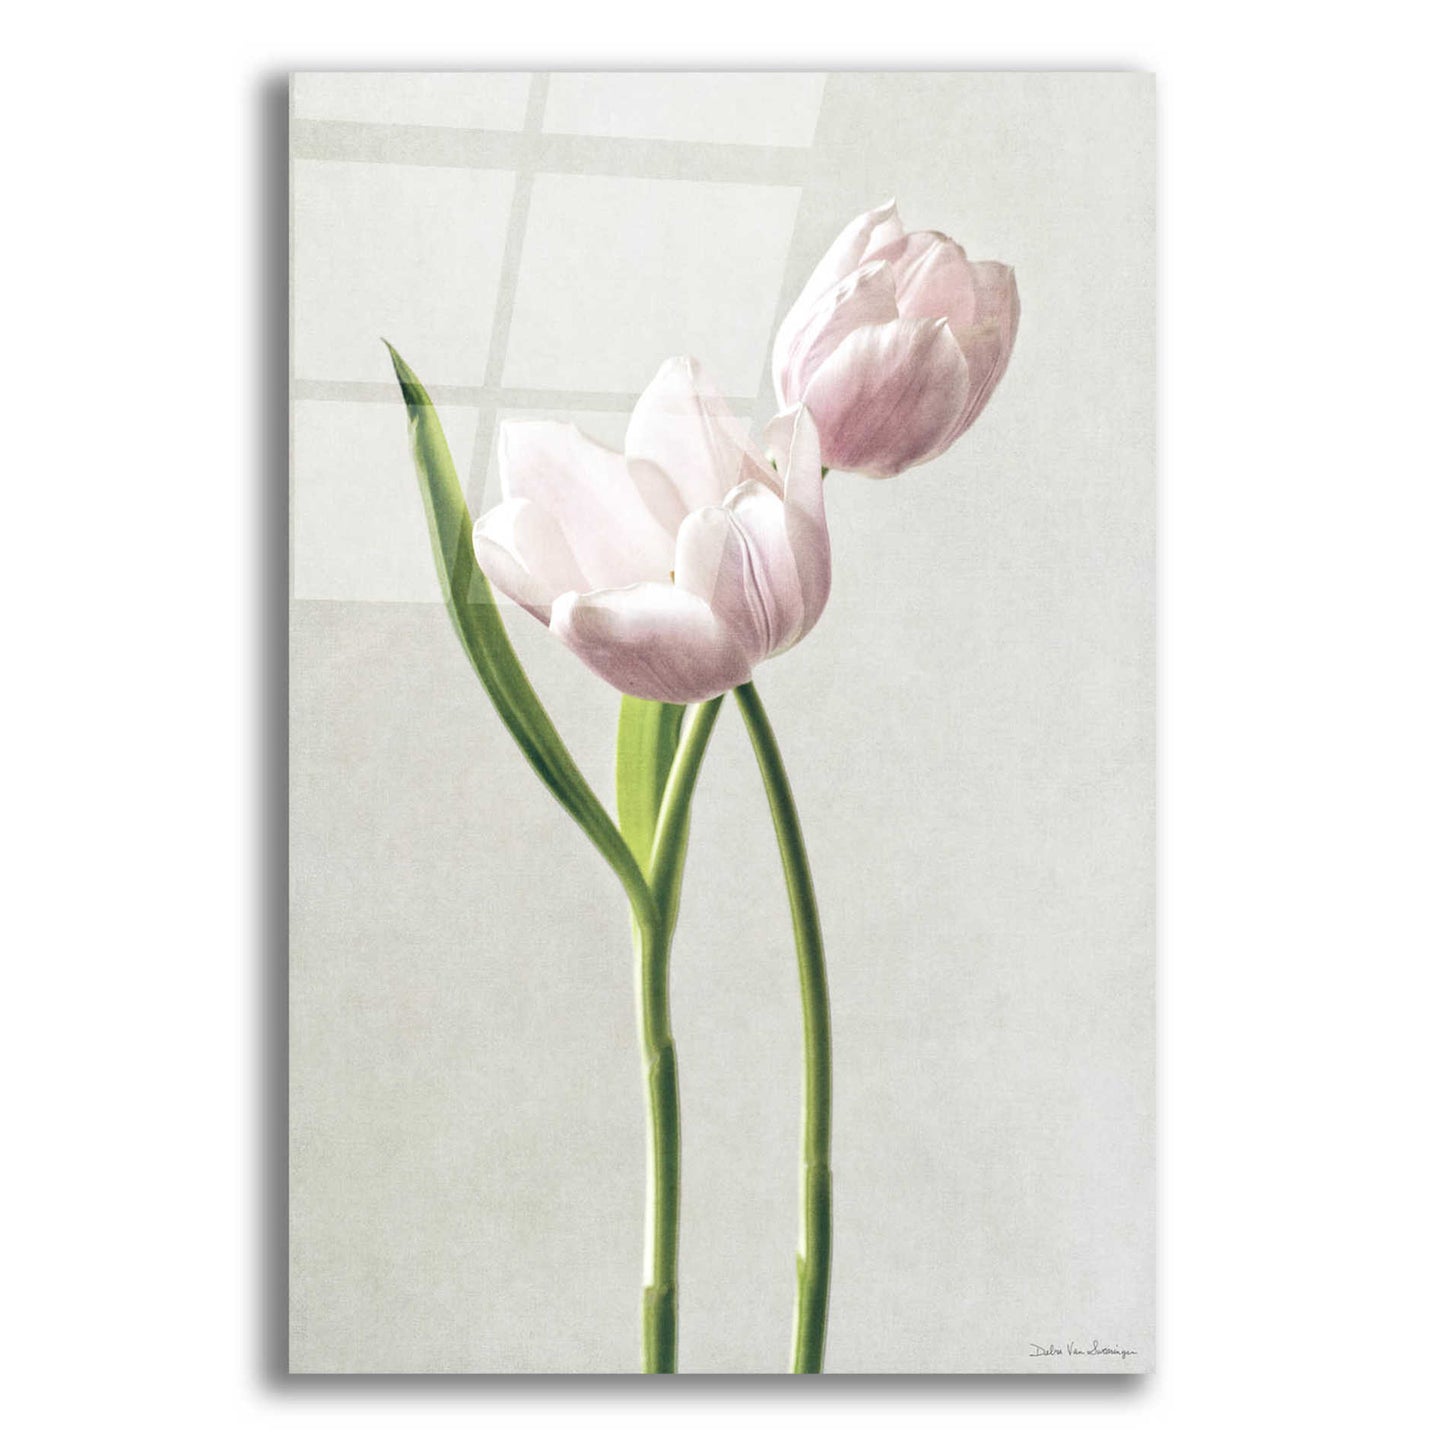 Epic Art 'Light Tulips III' by Debra Van Swearingen, Acrylic Glass Wall Art,12x16